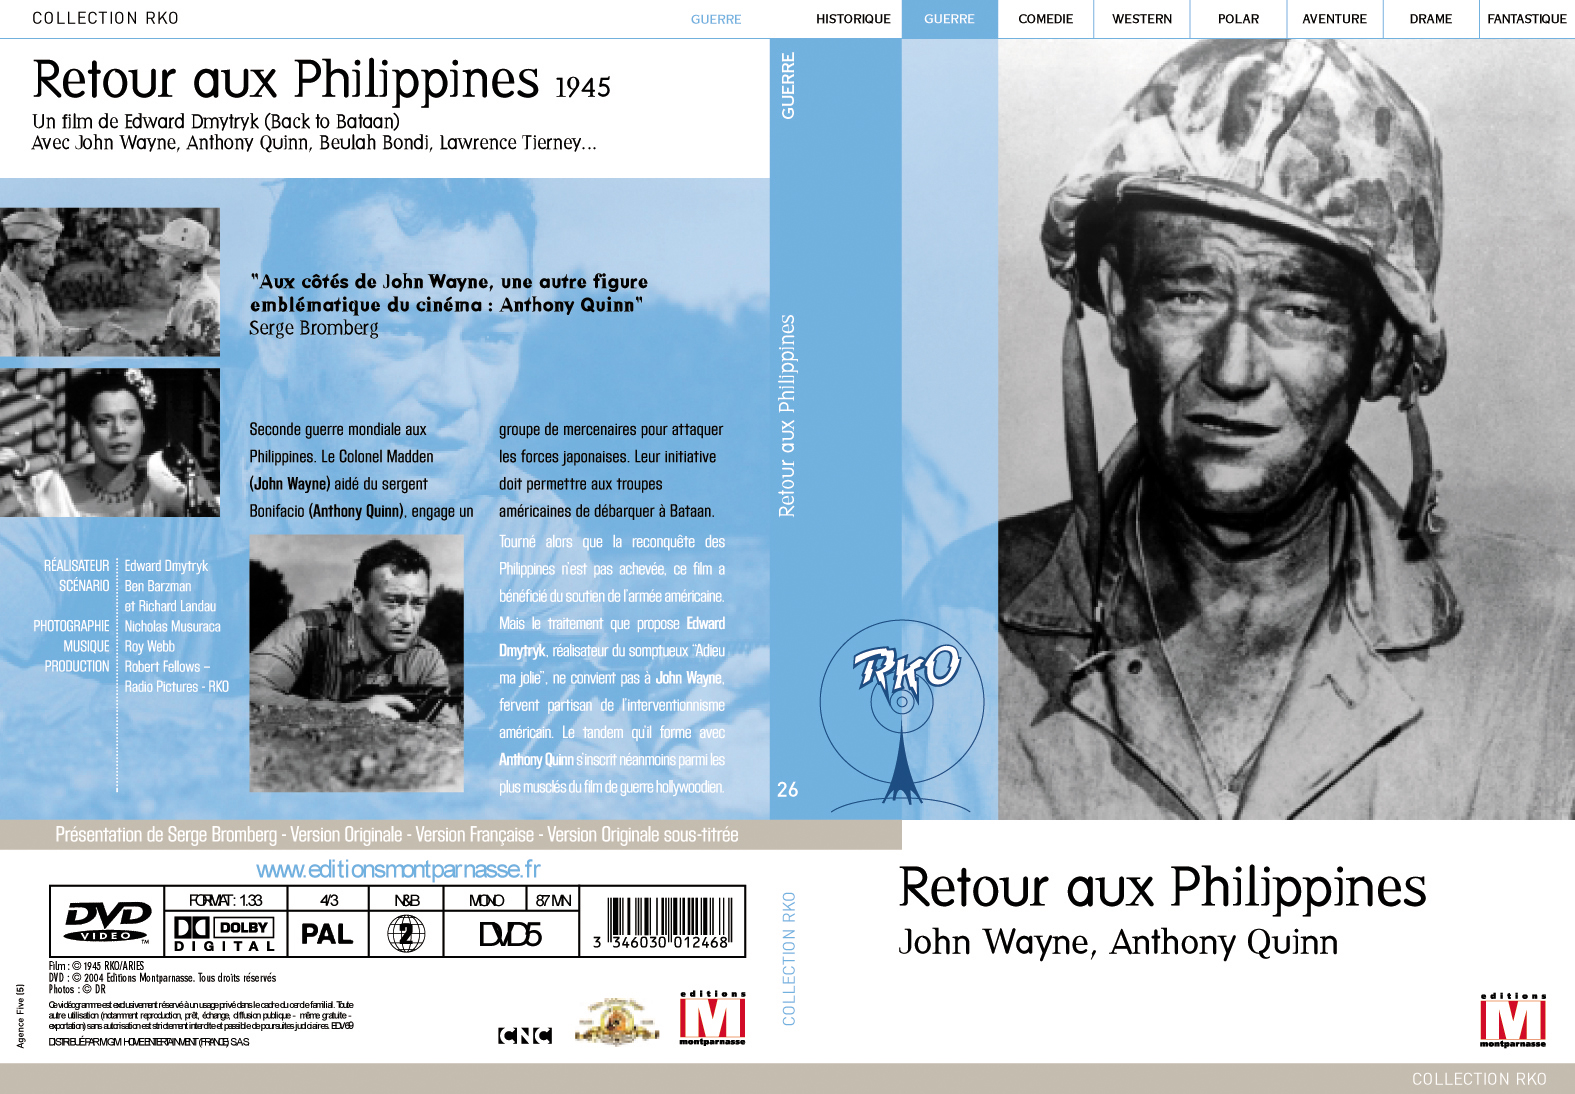 Jaquette DVD Retour aux Philippines v3